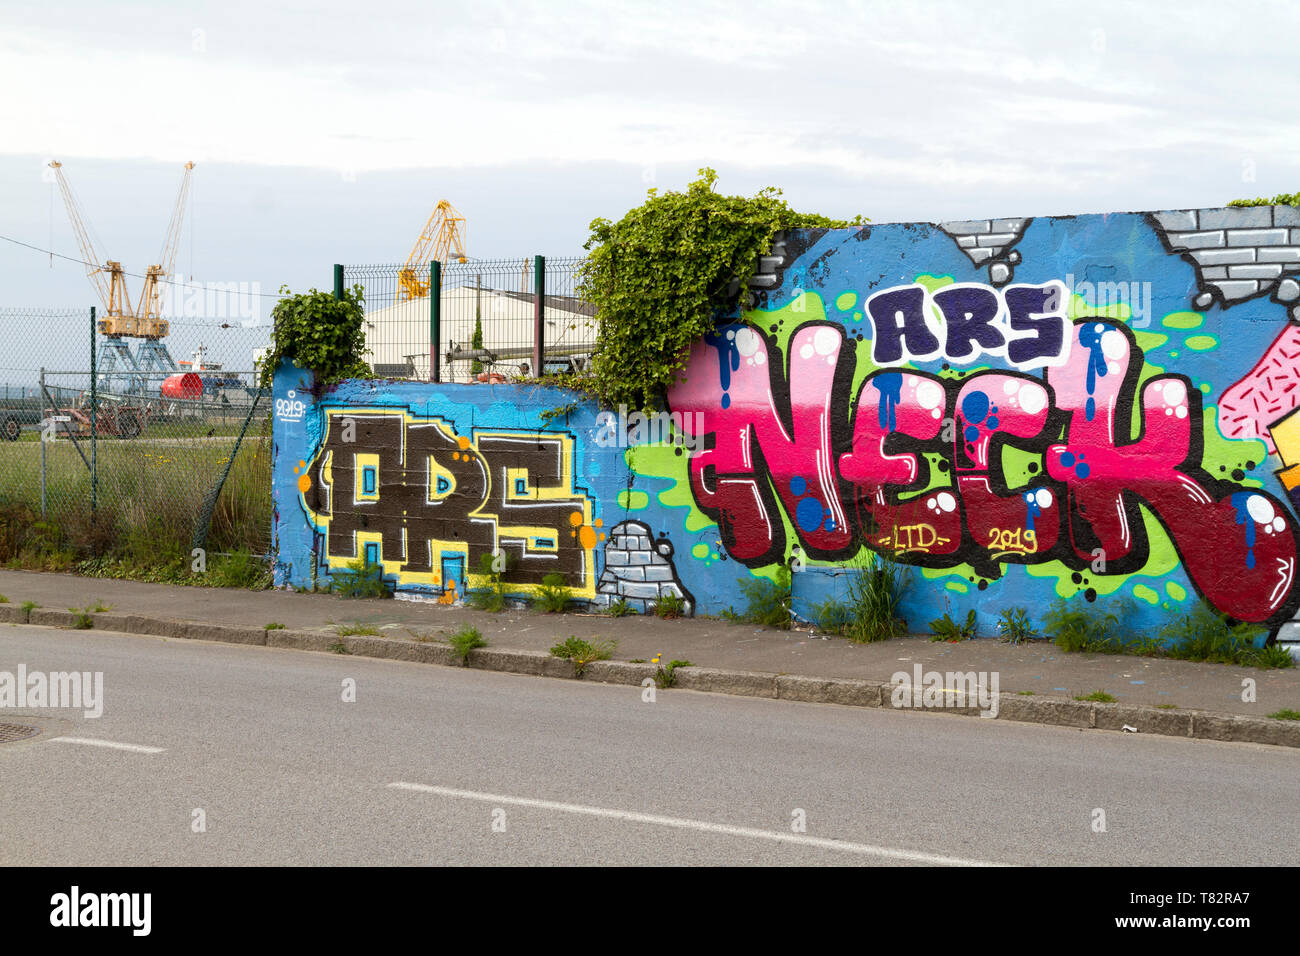 Tag e graffiti sui muri a Brest ,Finistère ,Brittany Foto Stock